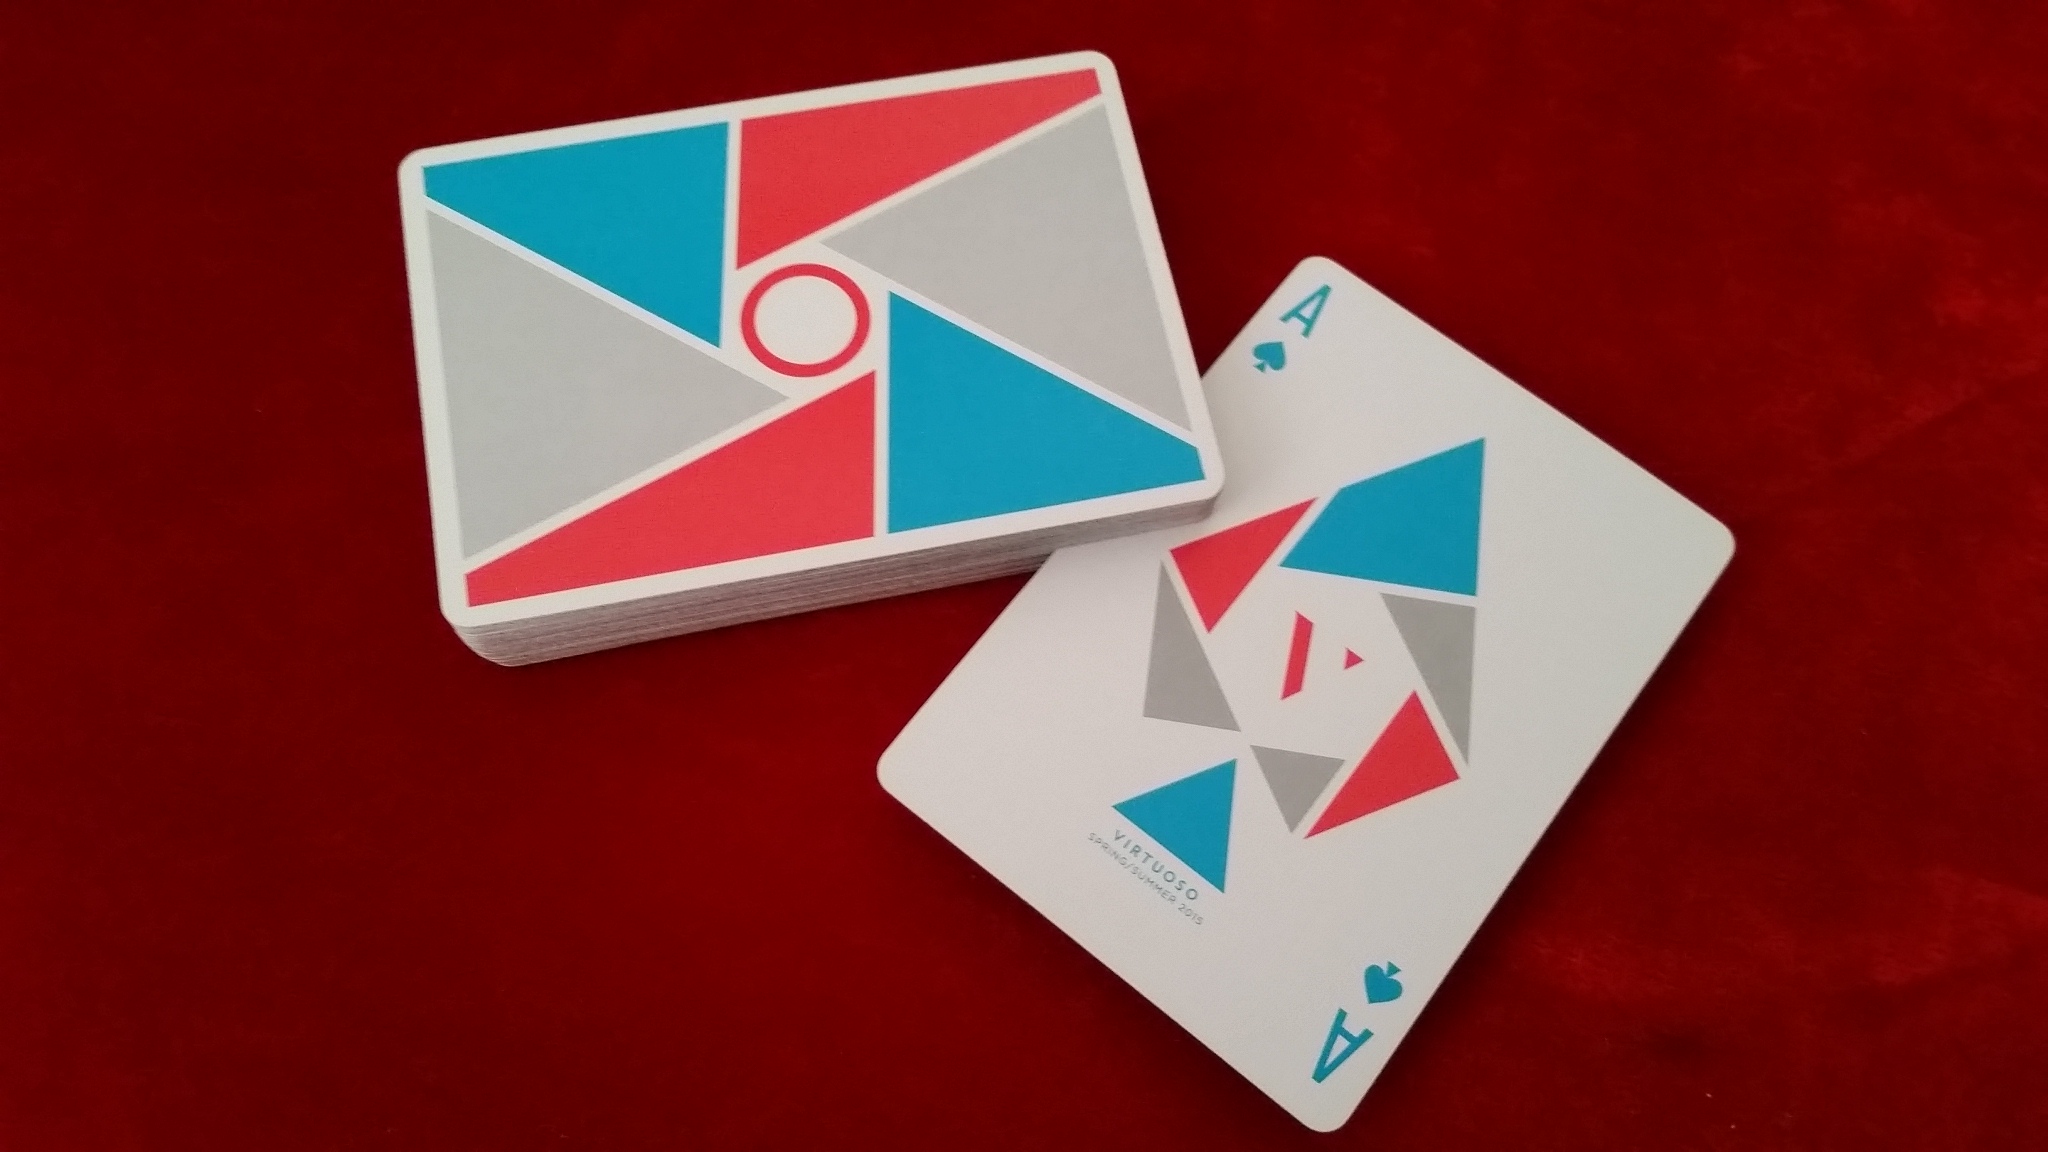 S/S 2015 Virtuoso Playing Cards | RamblerKudos